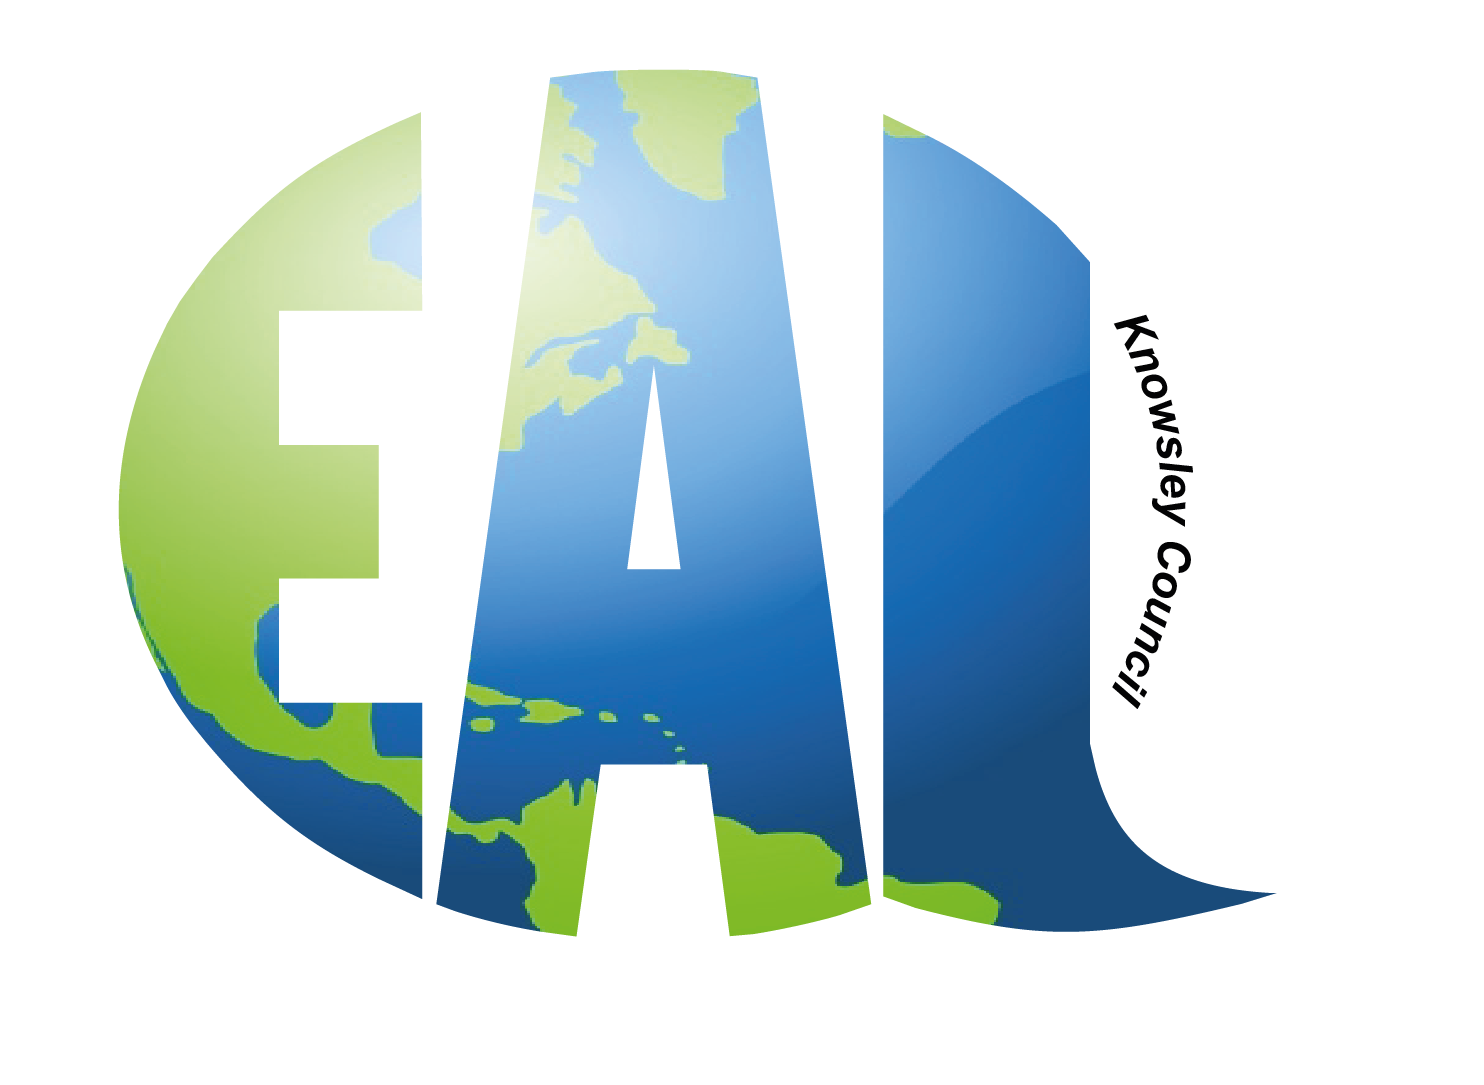 EAL Logo